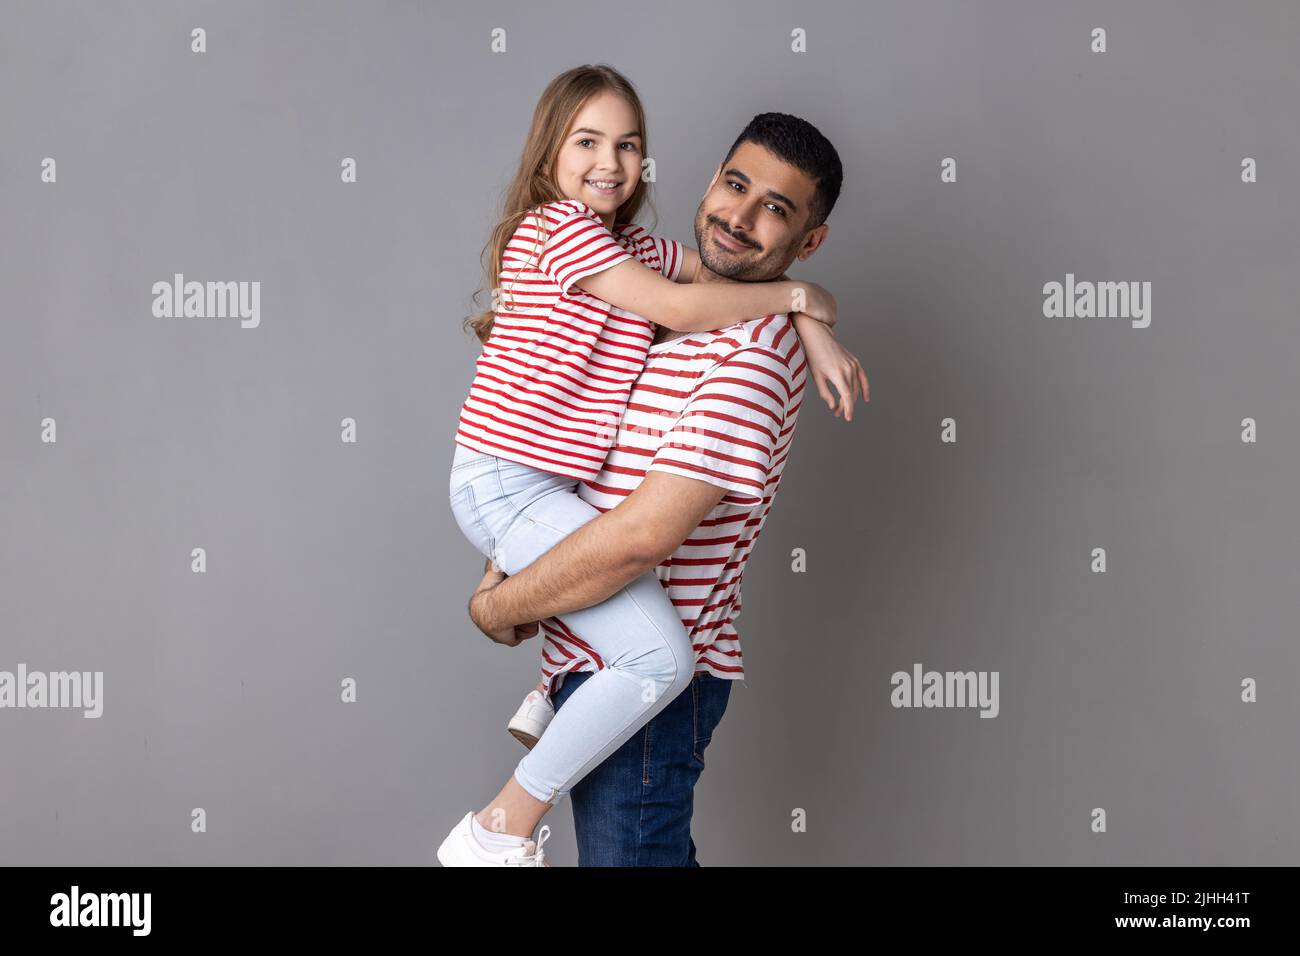 Porträt von glücklichen positiven Vater und Tochter in gestreiften T-Shirts stehen Blick auf die Kamera mit glücklichen Gesichtsausdruck, Papa hält Kind. Innenaufnahme des Studios isoliert auf grauem Hintergrund. Stockfoto